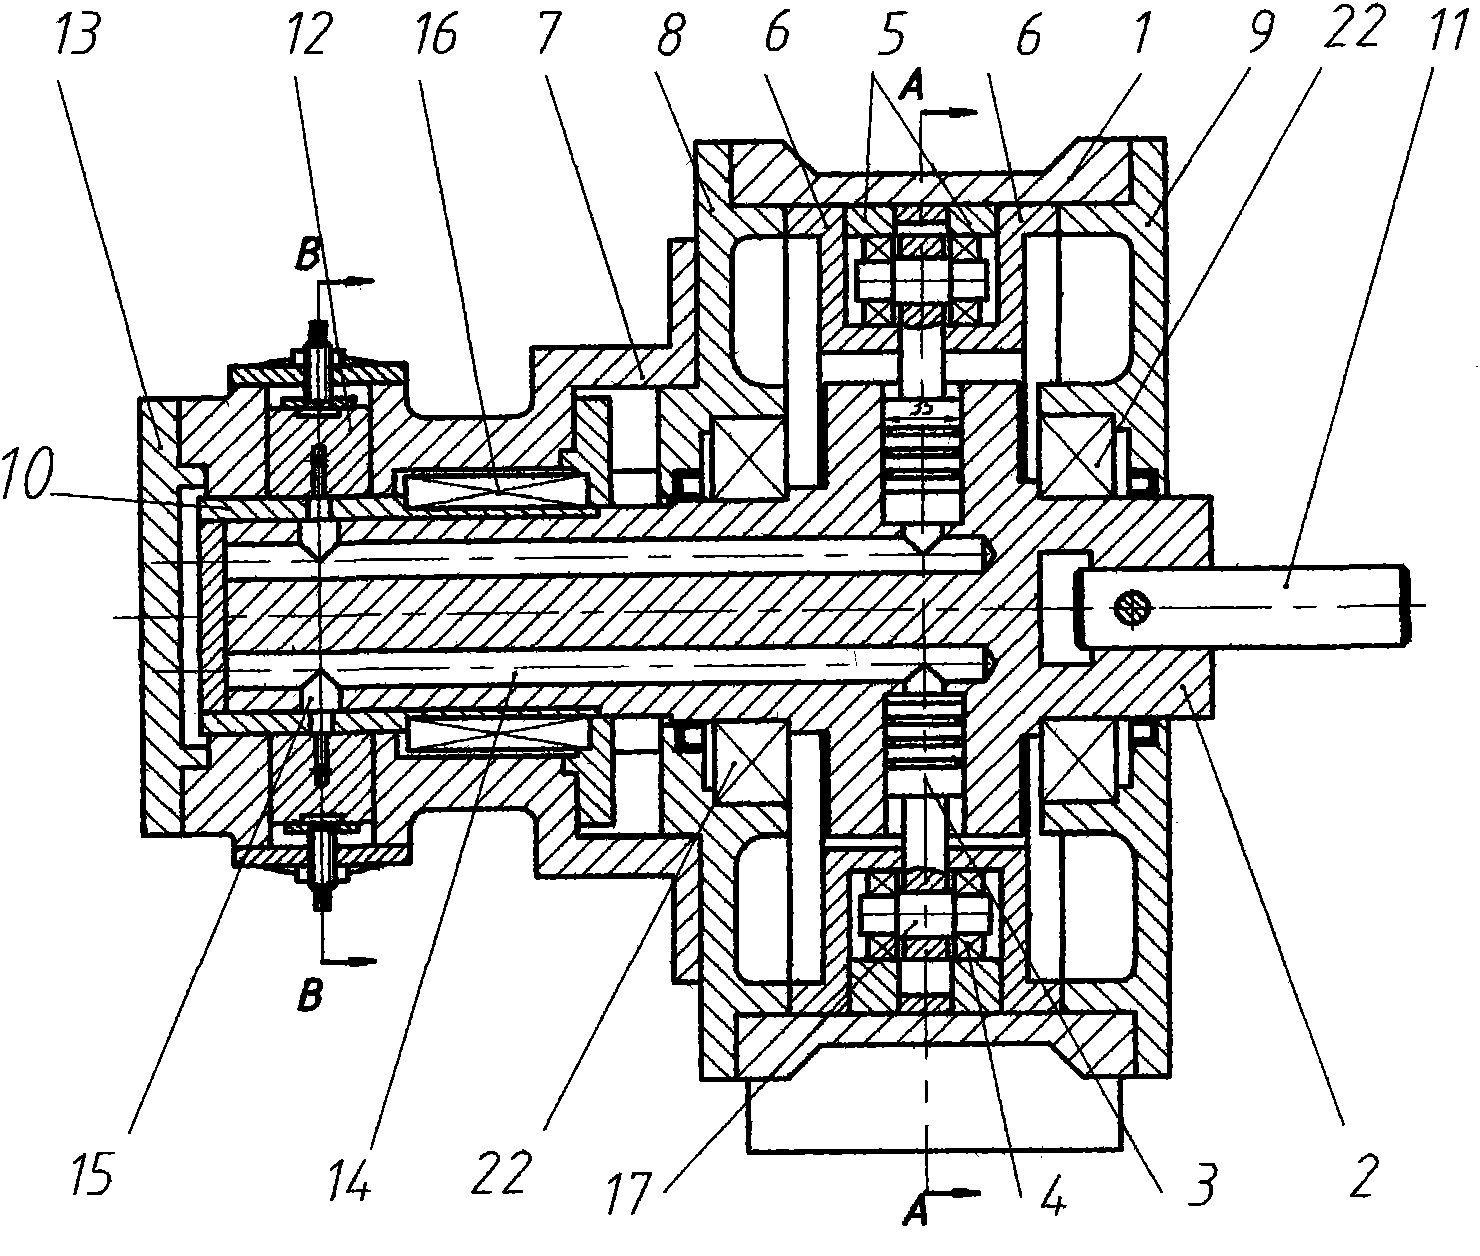 External radial plunger pump of sealing mechanism